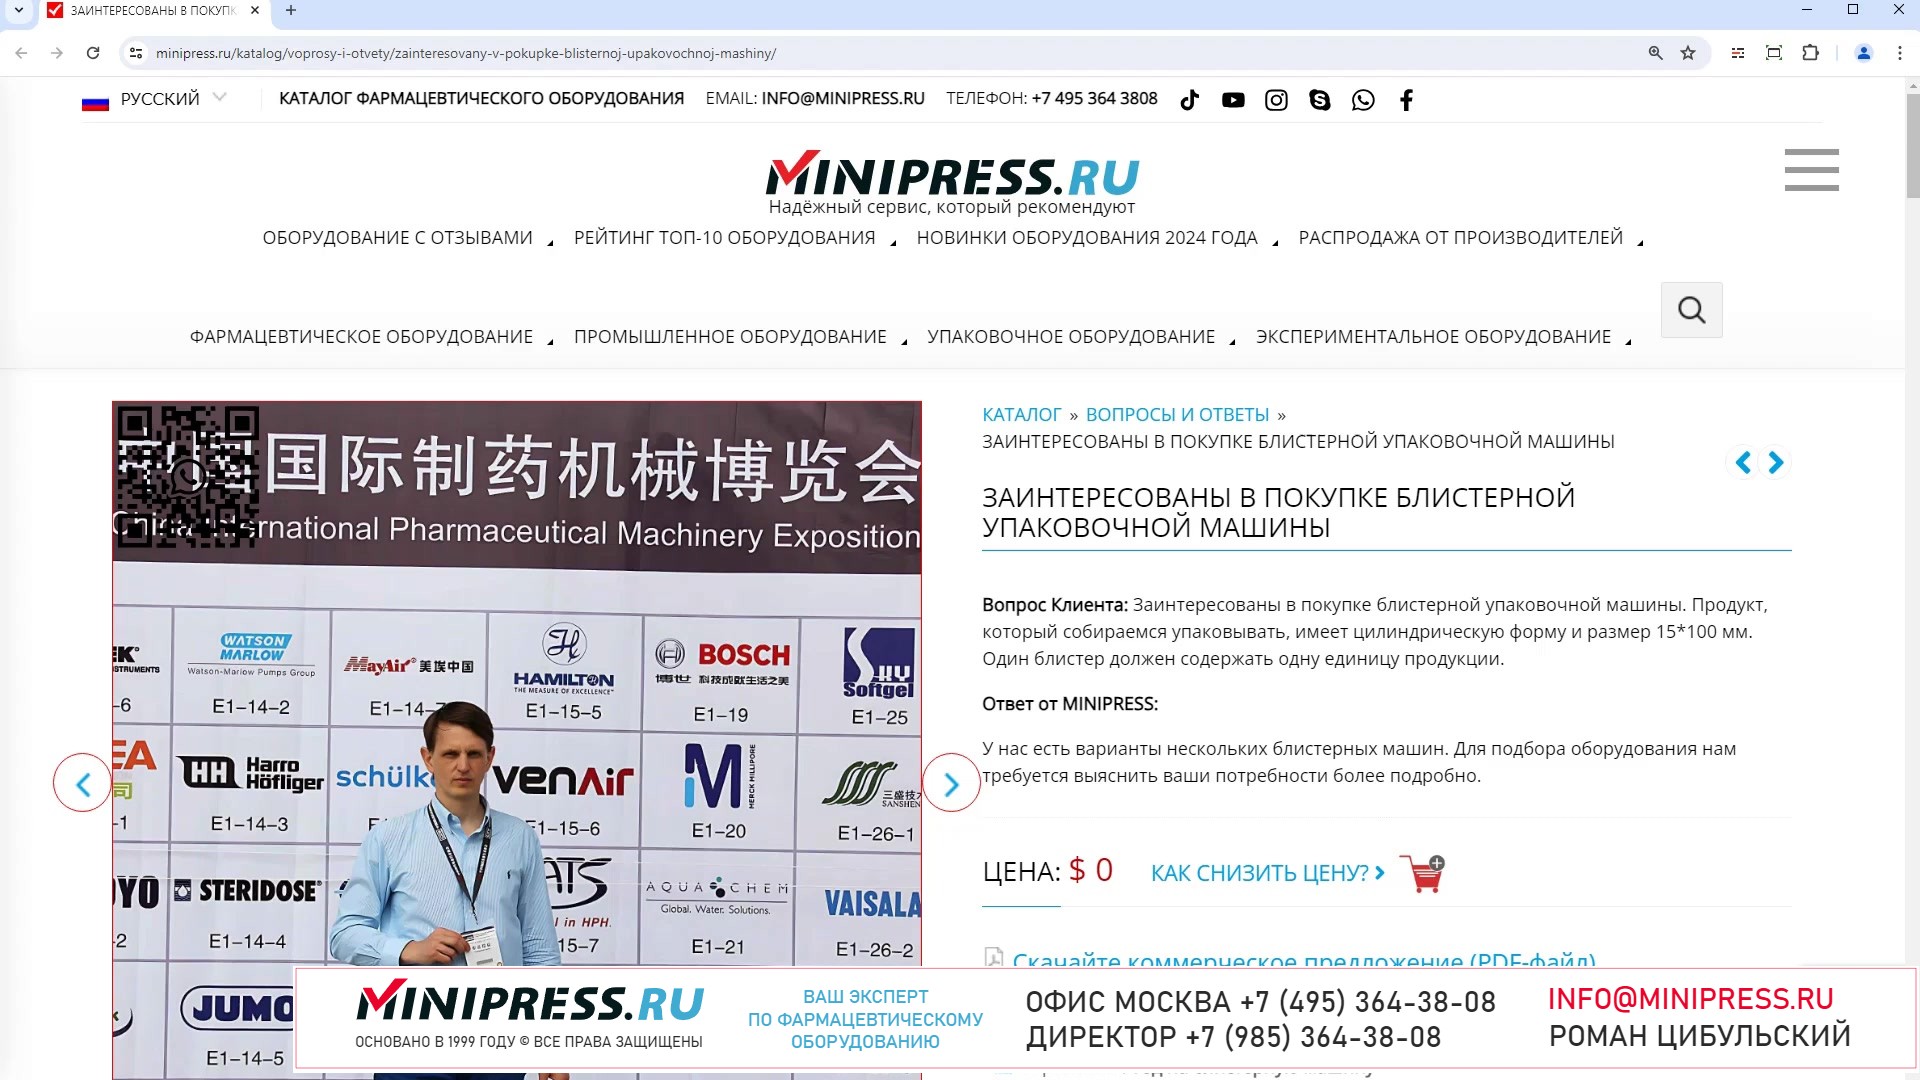 Minipress.ru Заинтересованы в покупке блистерной упаковочной машины